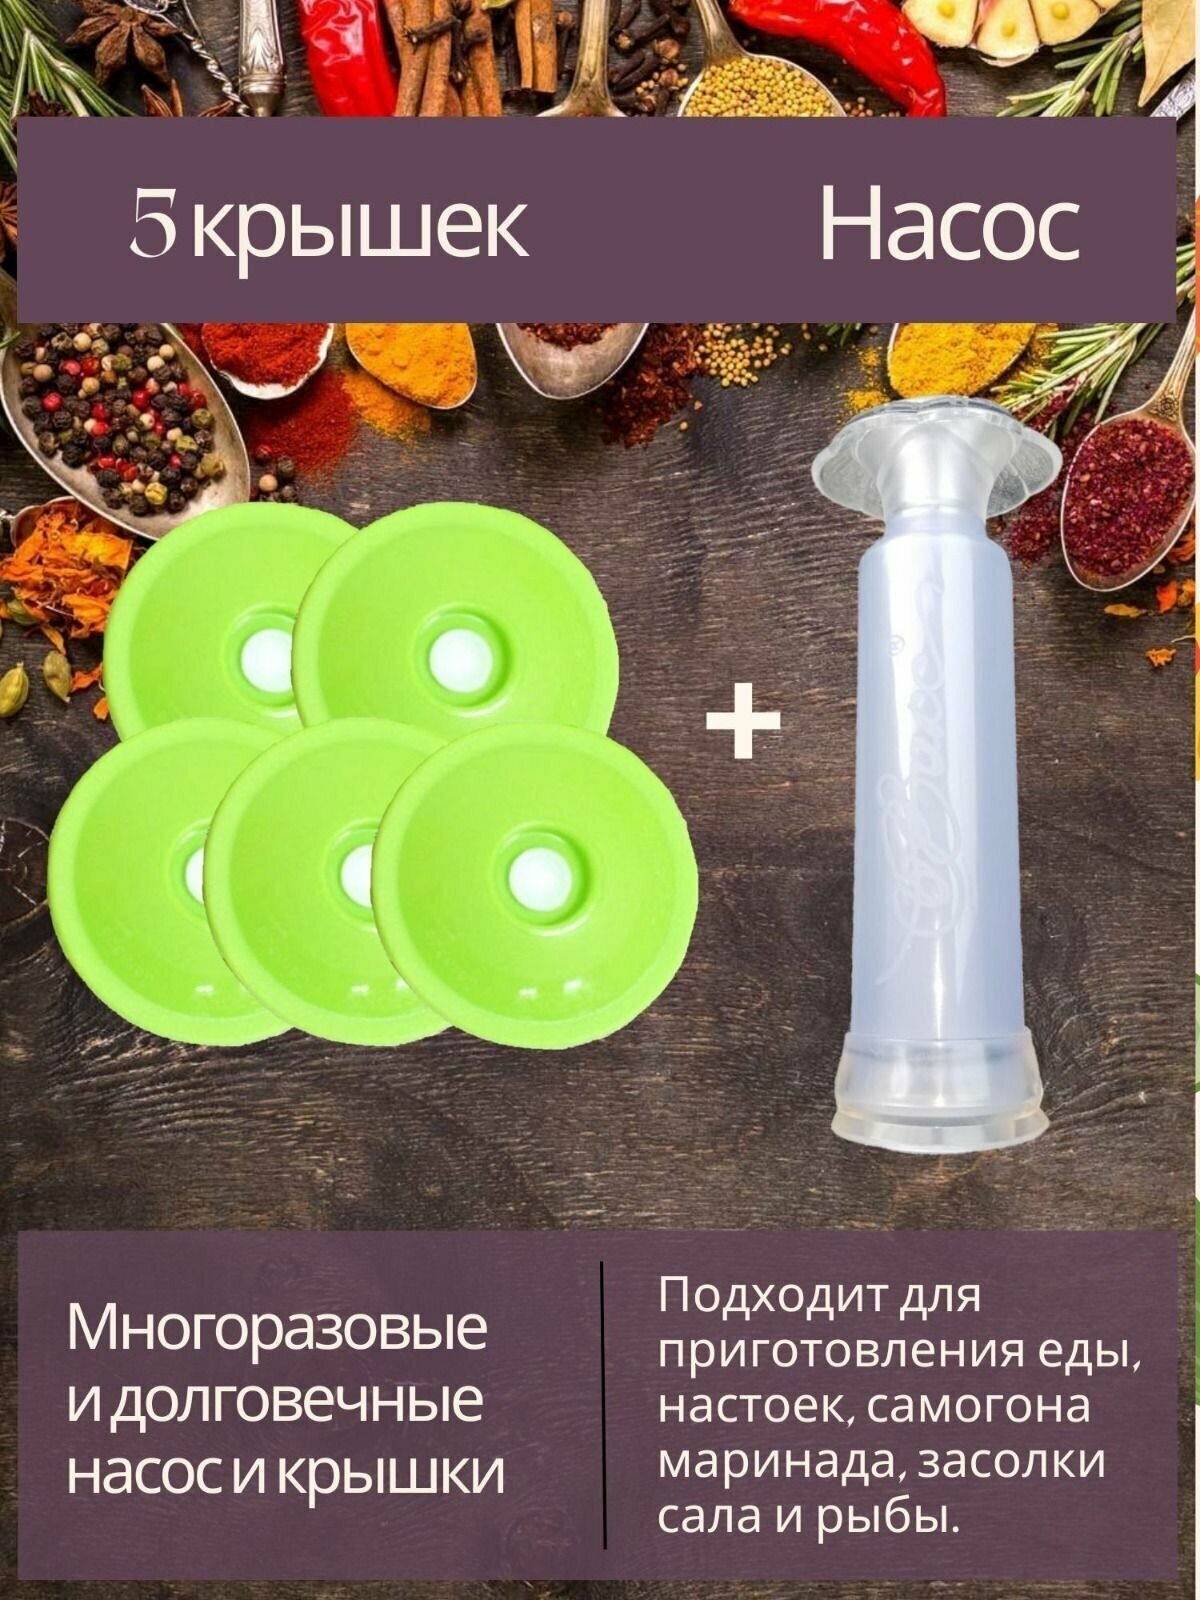 Набор вакуумных крышек для банок в комплекте с насосом отличный вариант консервации и приготовления продуктов